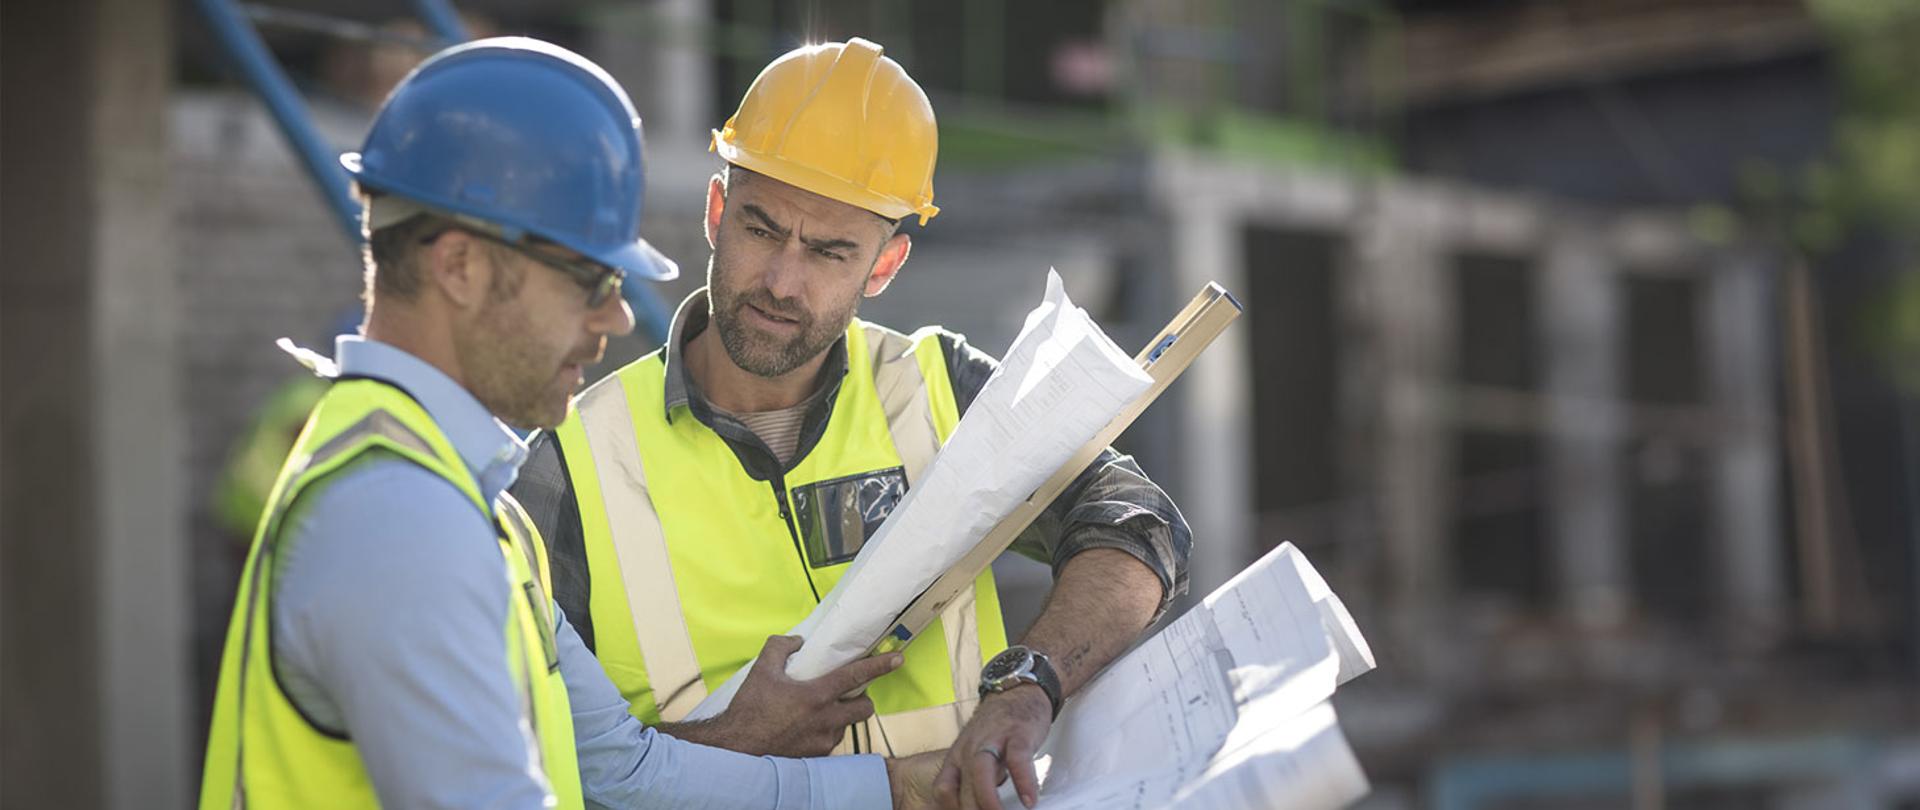 Zdjęcie przedstawia dwóch pracowników budowlanych w kaskach i kamizelkach odblaskowych z planami w dłoniach.